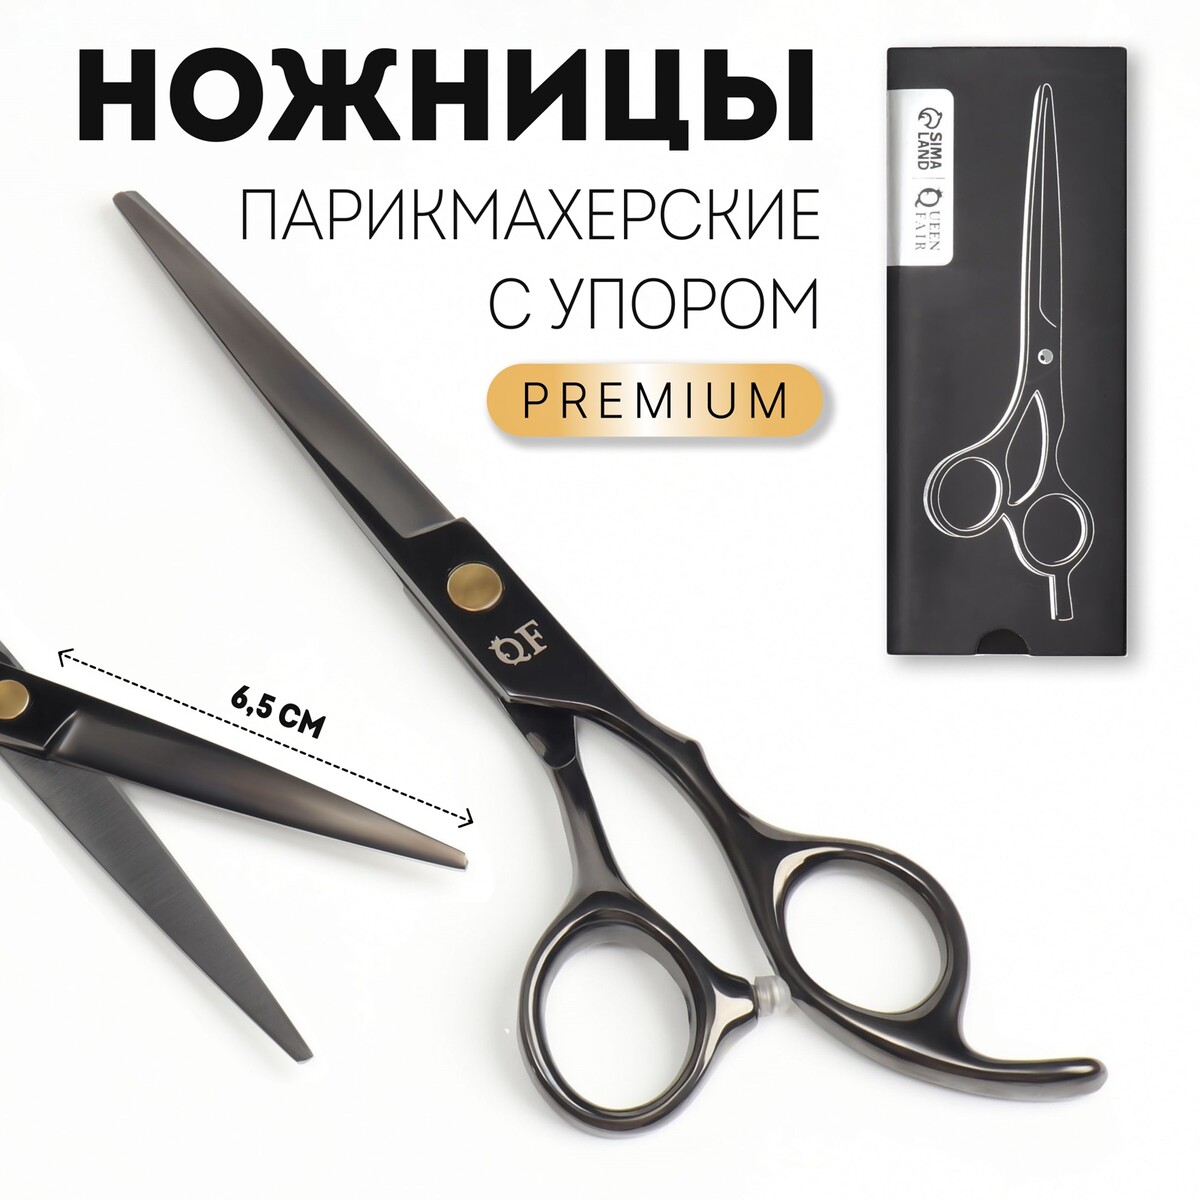 Ножницы парикмахерские с упором ножницы хозяйственные gefu металлические